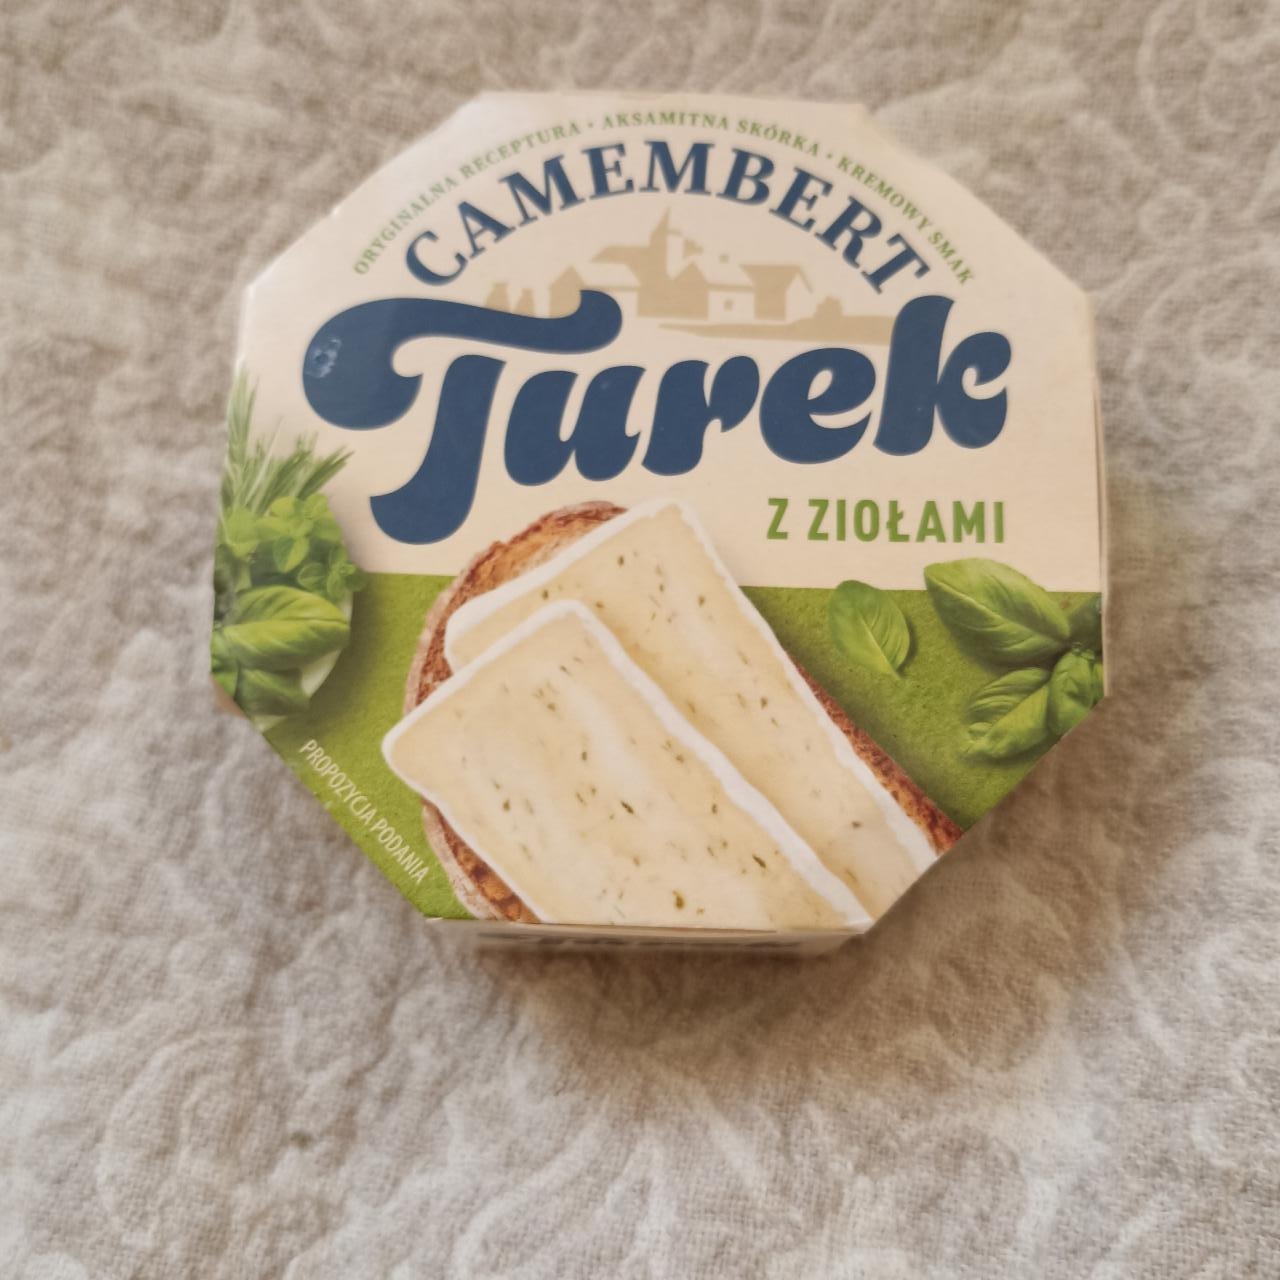 Фото - Camembert turek z ziołmi Turek